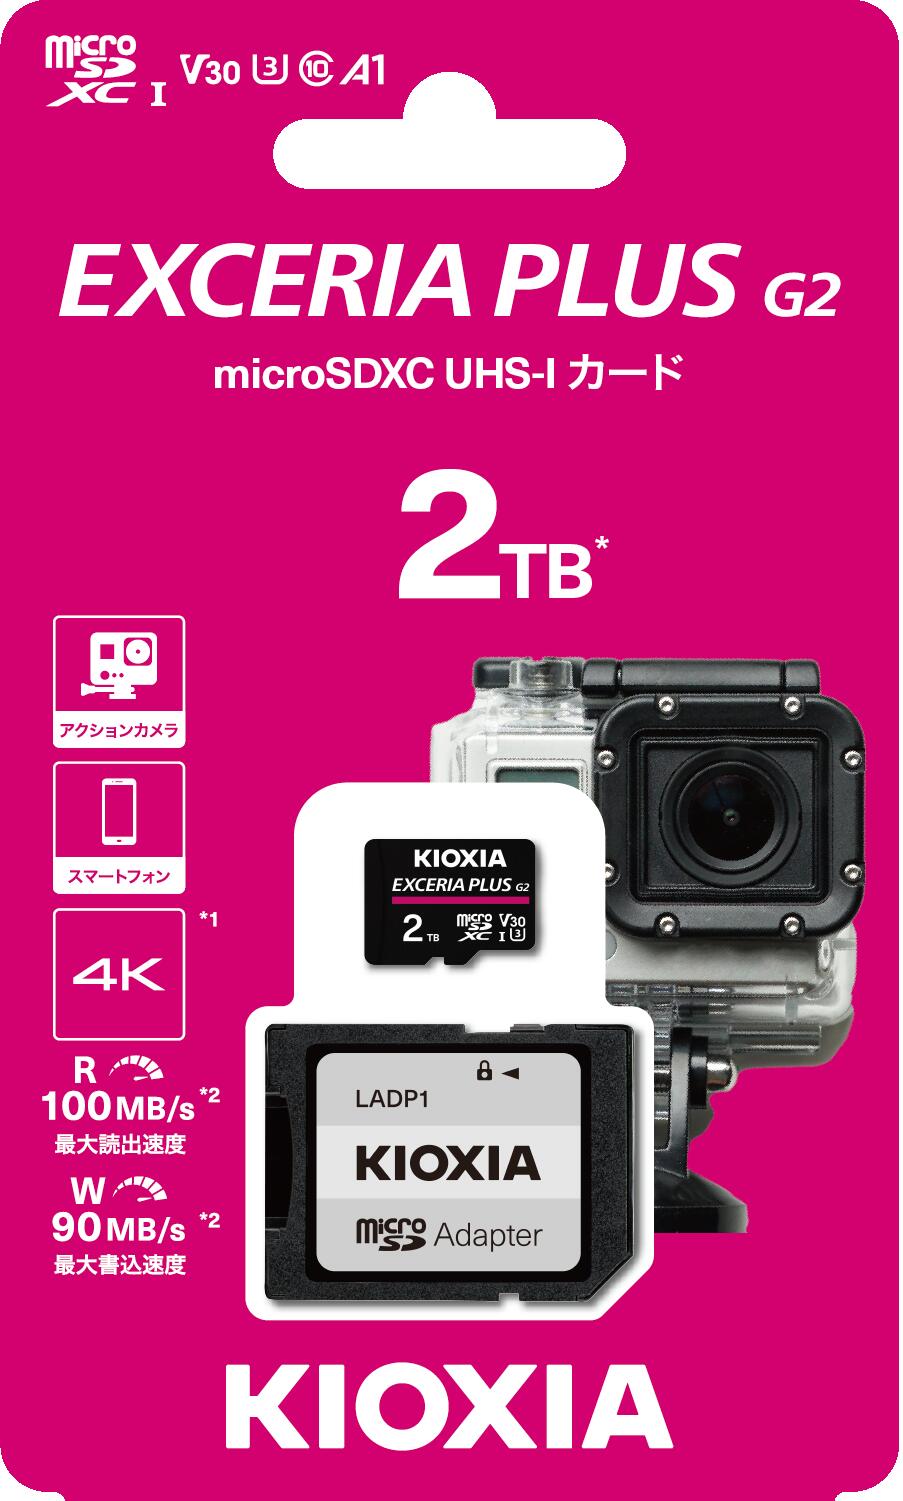 キオクシア(KIOXIA) EXCERIA PLUS G2 microSDXC UHS-I メモリーカード 